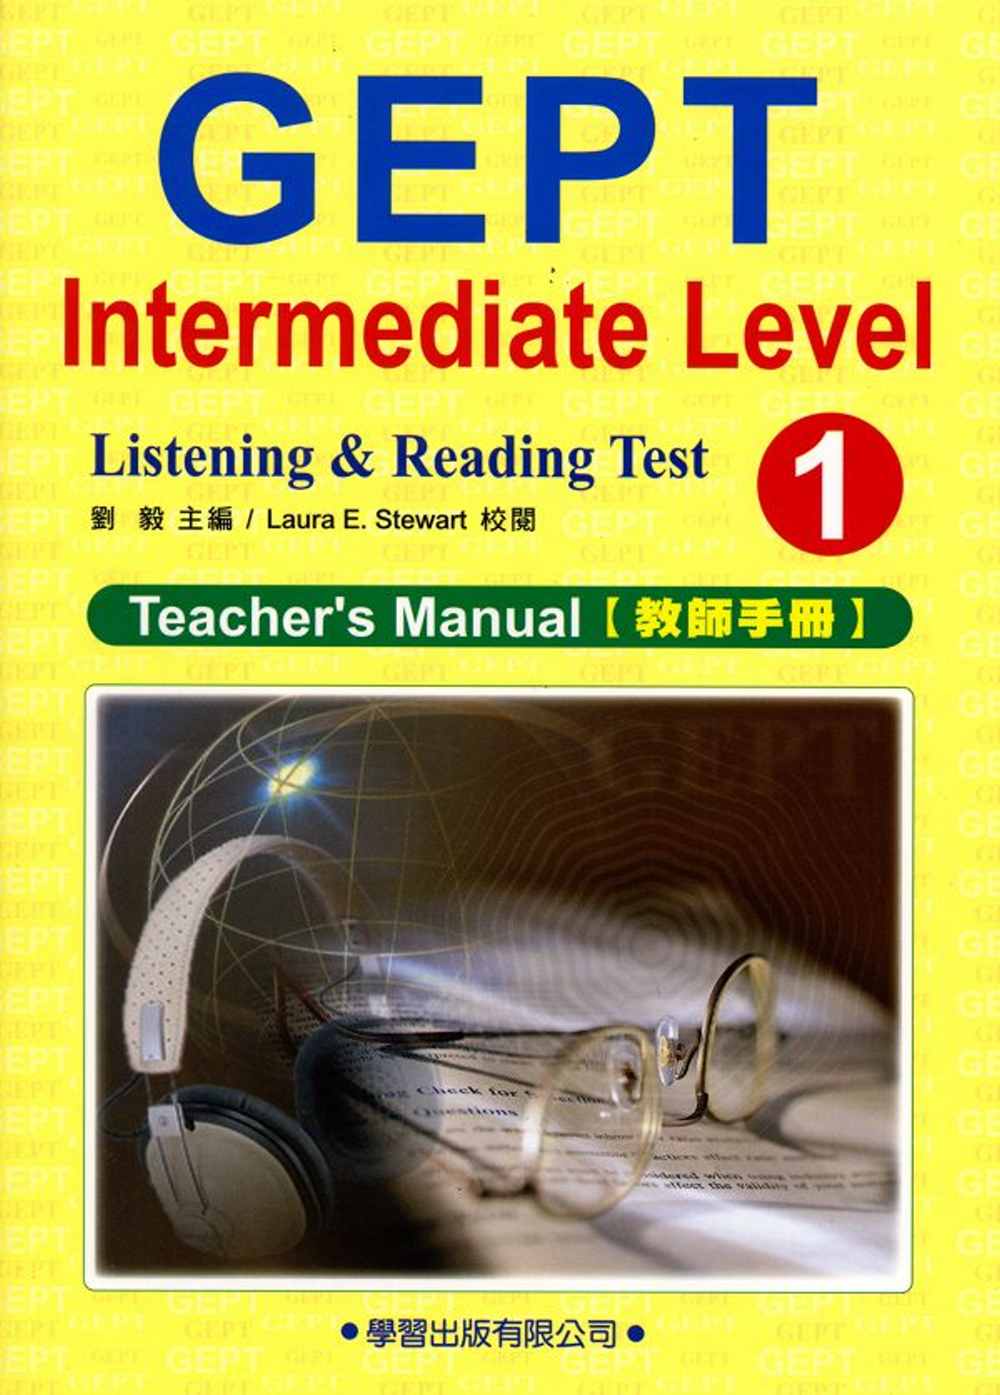 中級英檢模擬試題(1)教師手冊(附MP3)